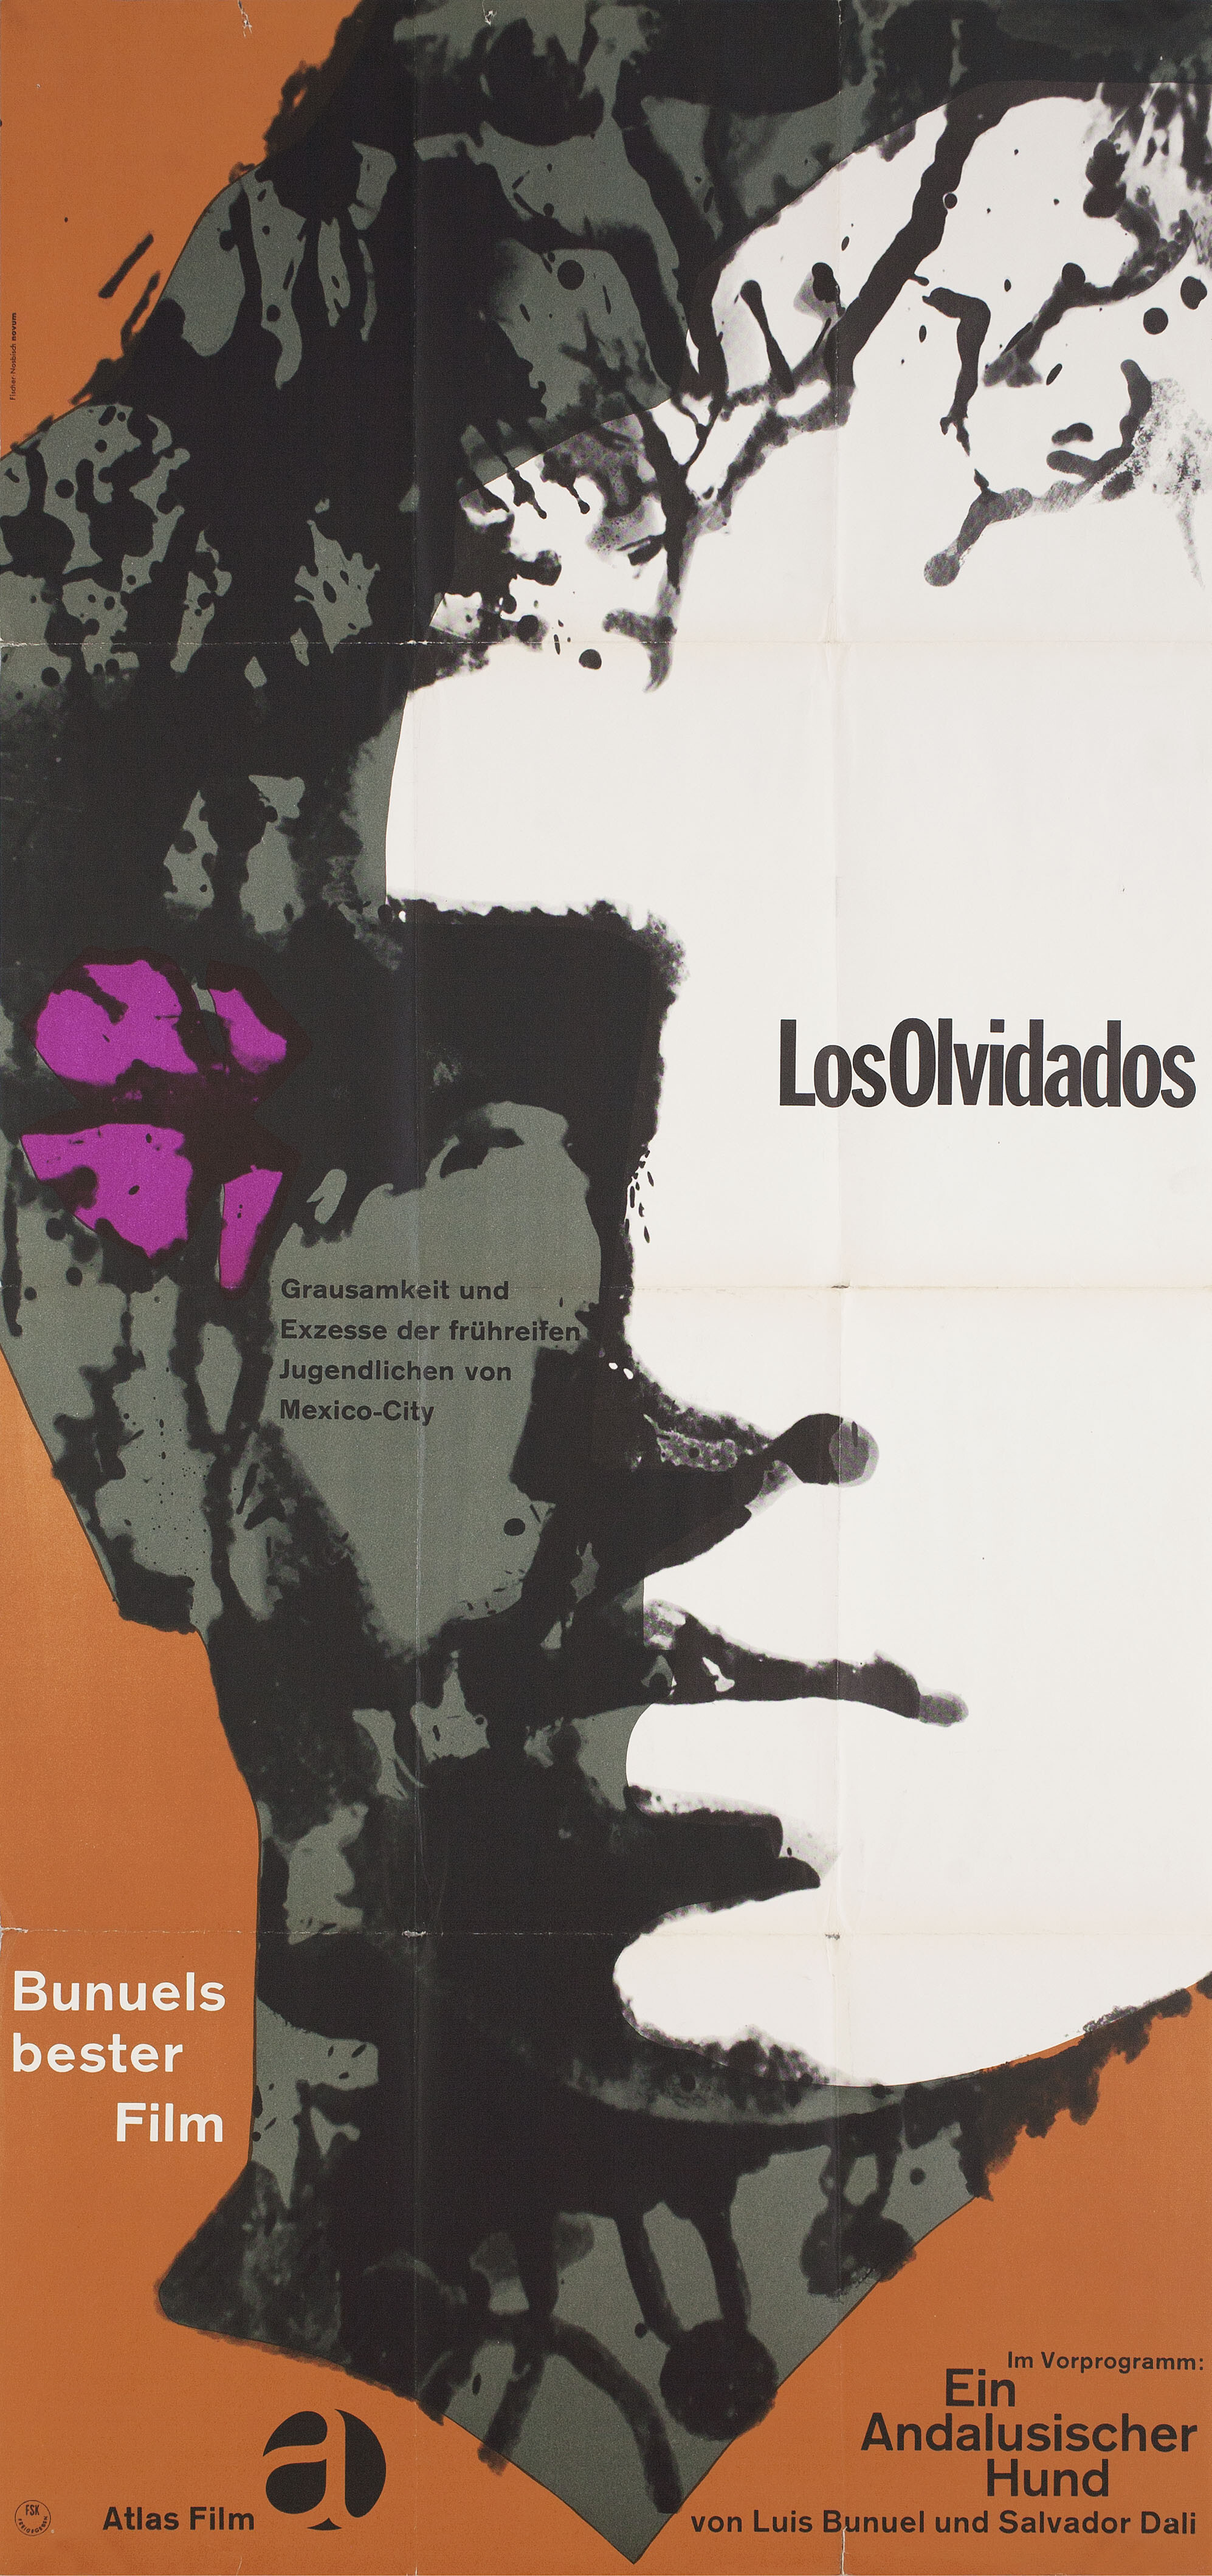 Забытые (Los Olvidados, 1950), режиссёр Луис Бунюэль, немецкий (ФРГ) постер к фильму, автор Доротея Фишер-Носбиш (графический дизайн, 1962 год)